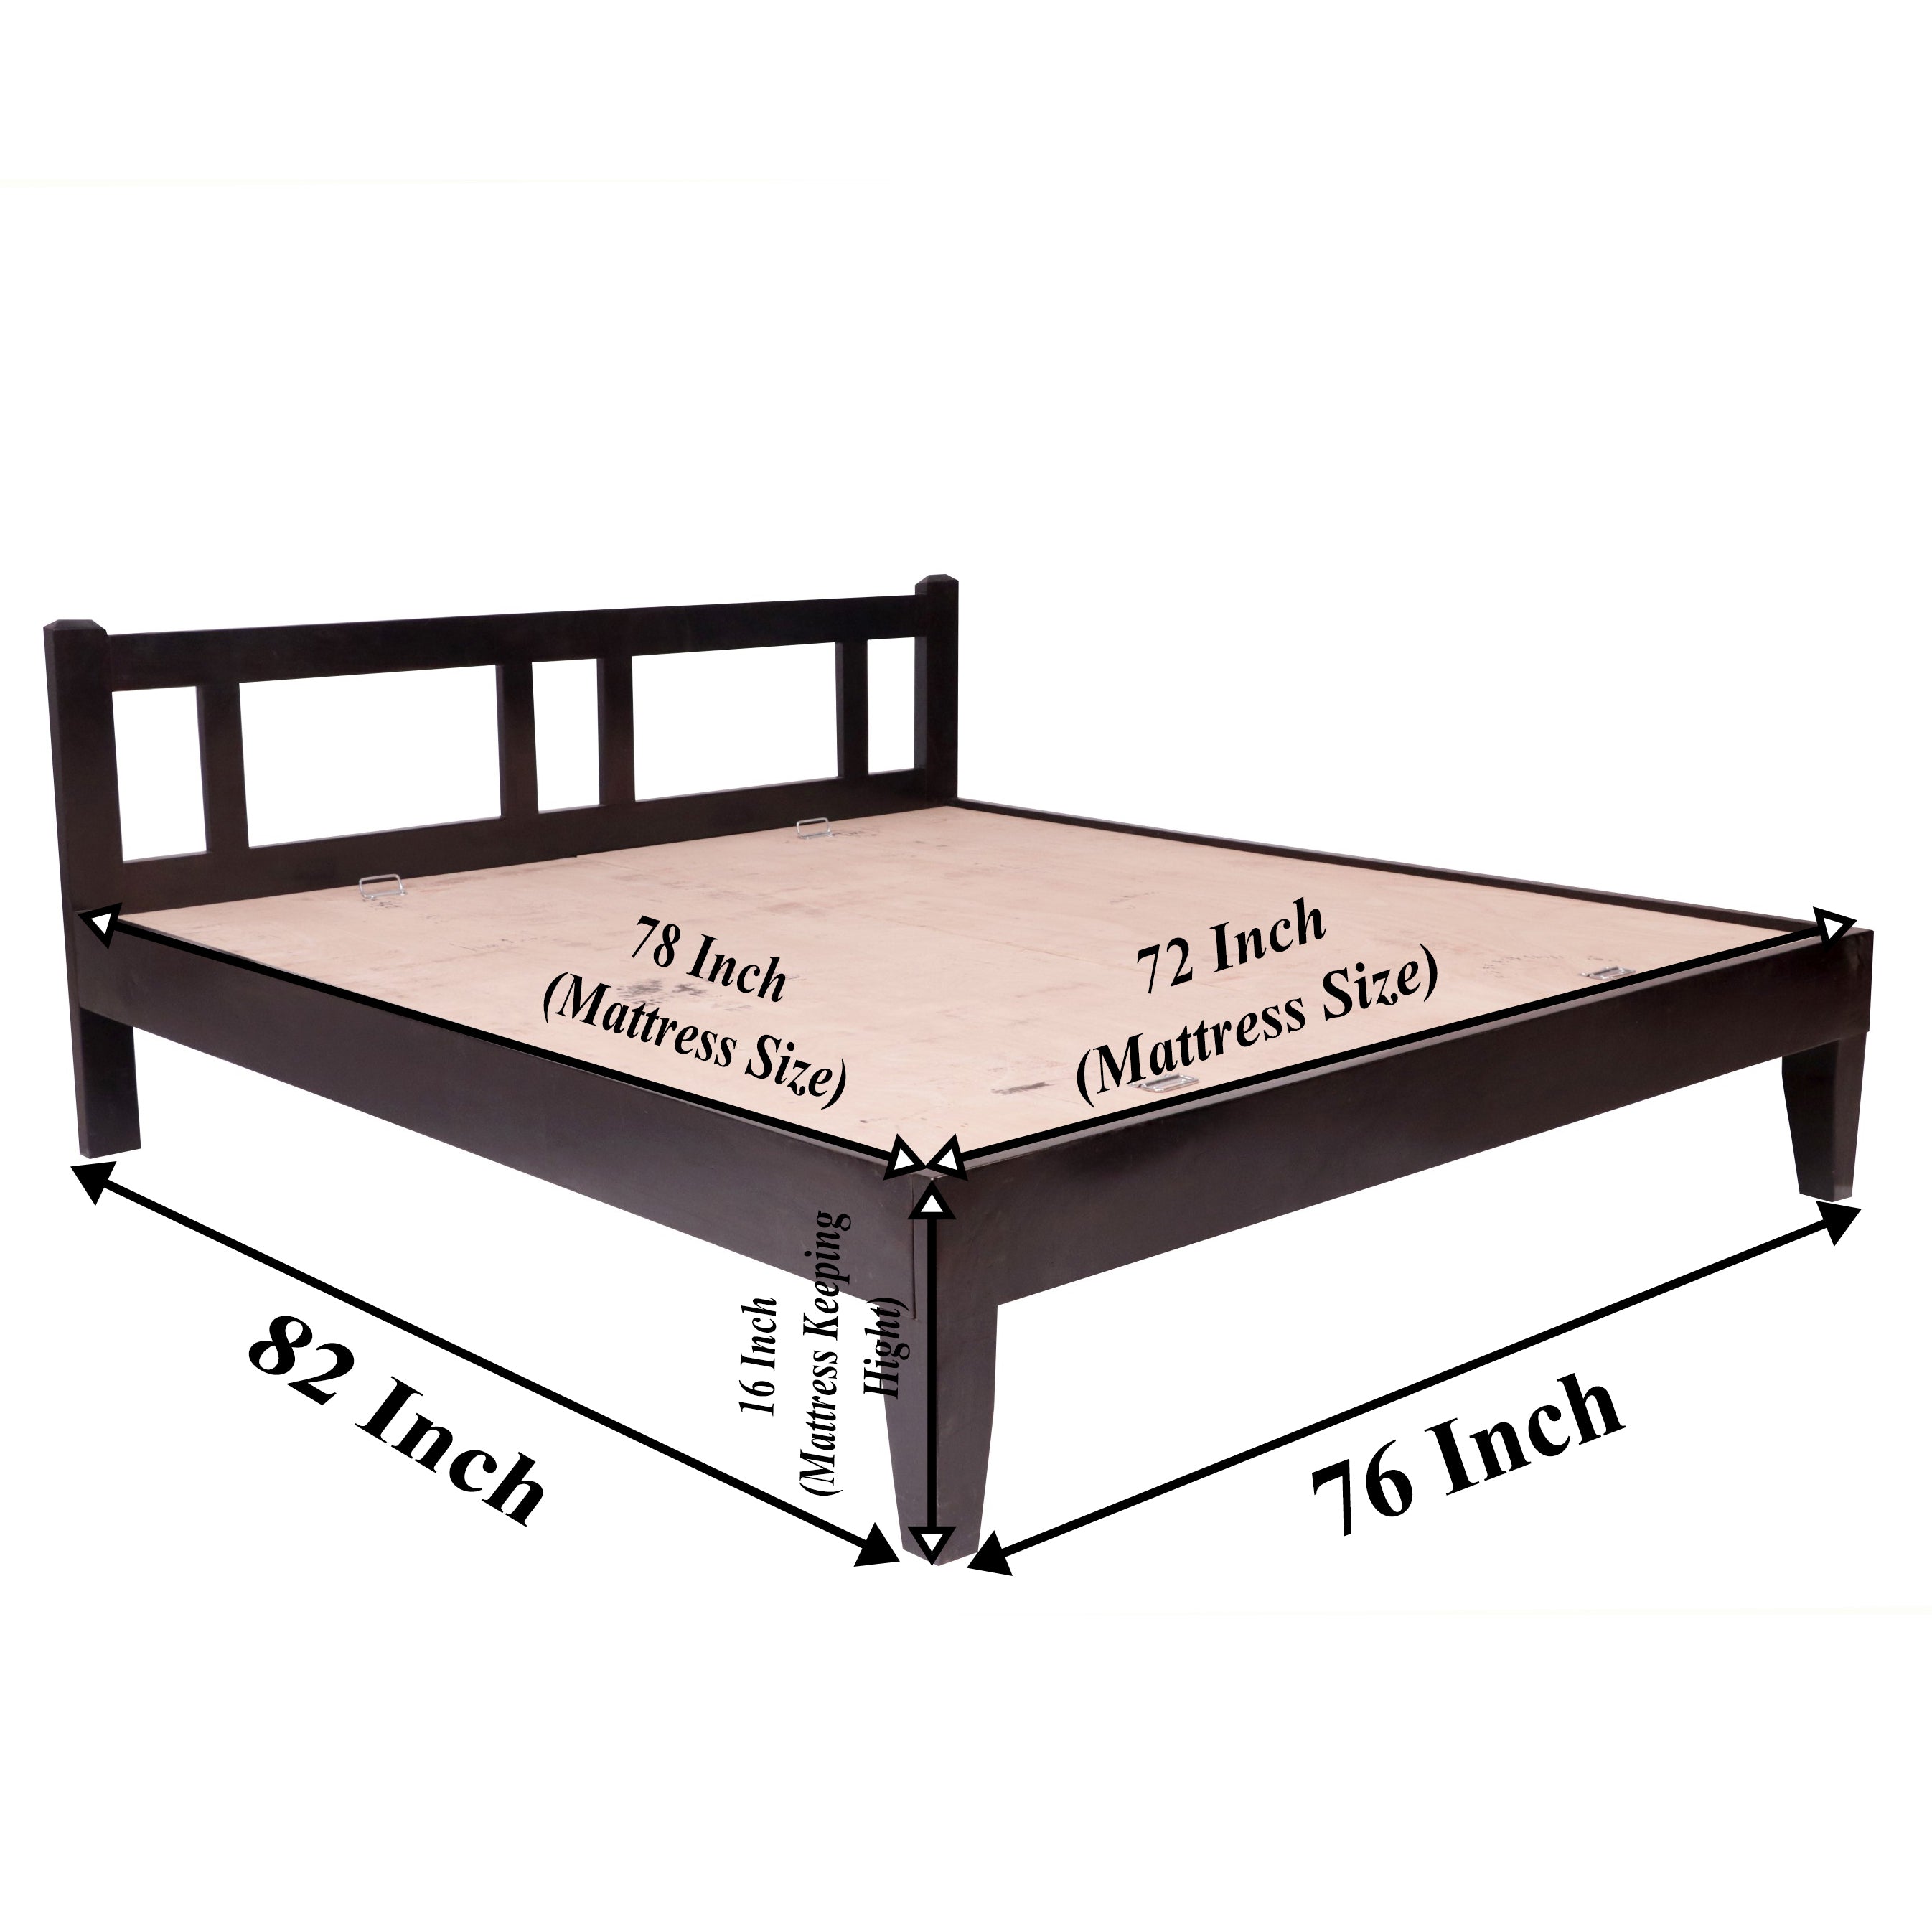 Teak wood Simplistic Bed Bed